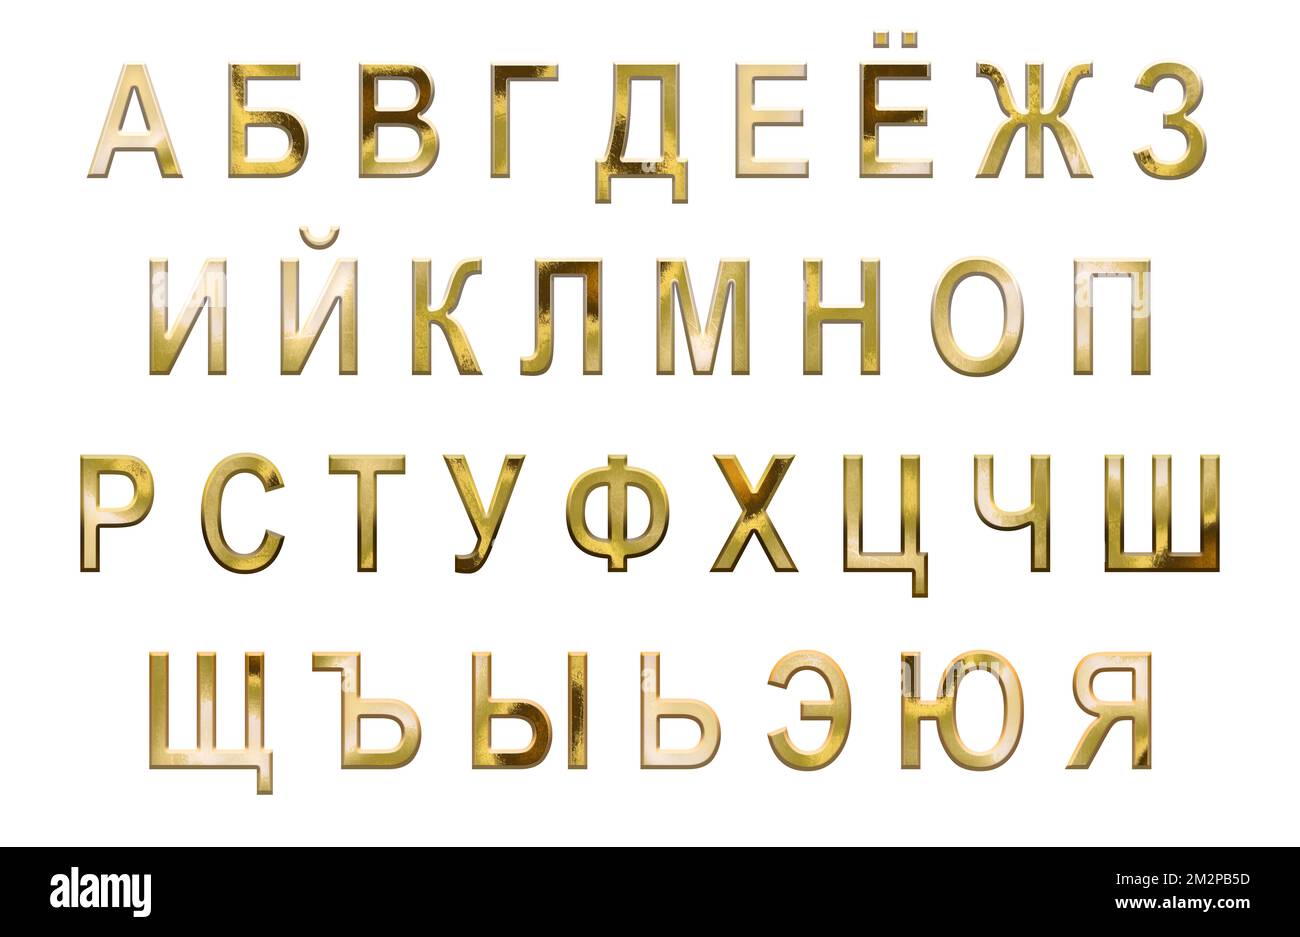 Alfabeto cirílico dorado, juego de letras del alfabeto ruso completo, letras mayúsculas Foto de stock